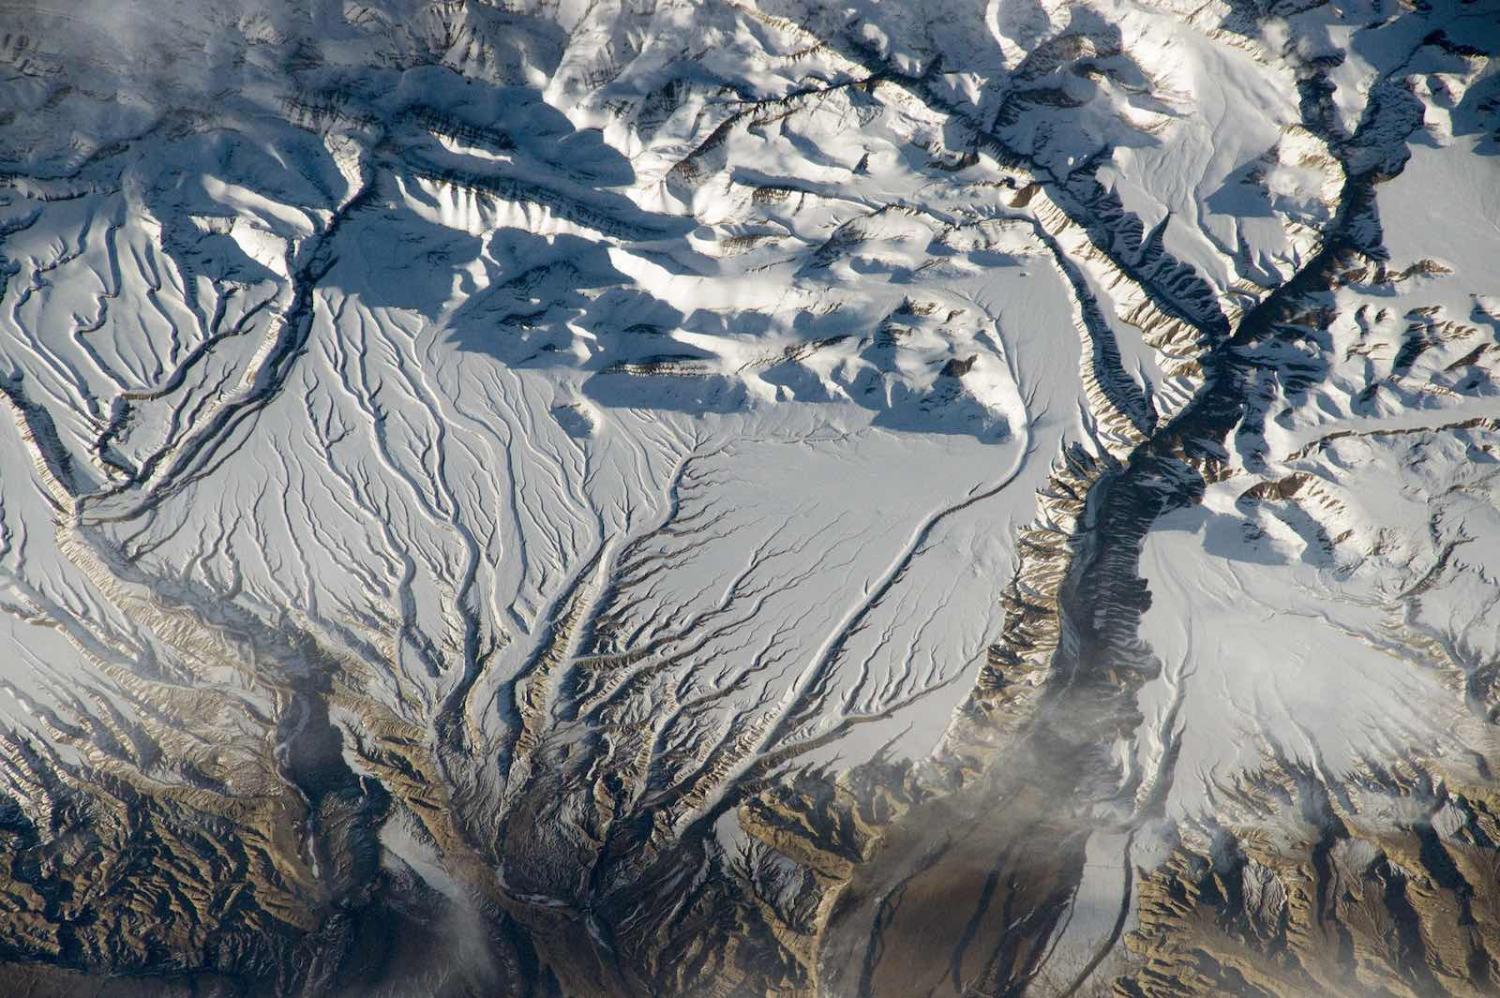 Rivers and snow in the Himalayas along the border between China and India (NASA Johnson/Flickr)